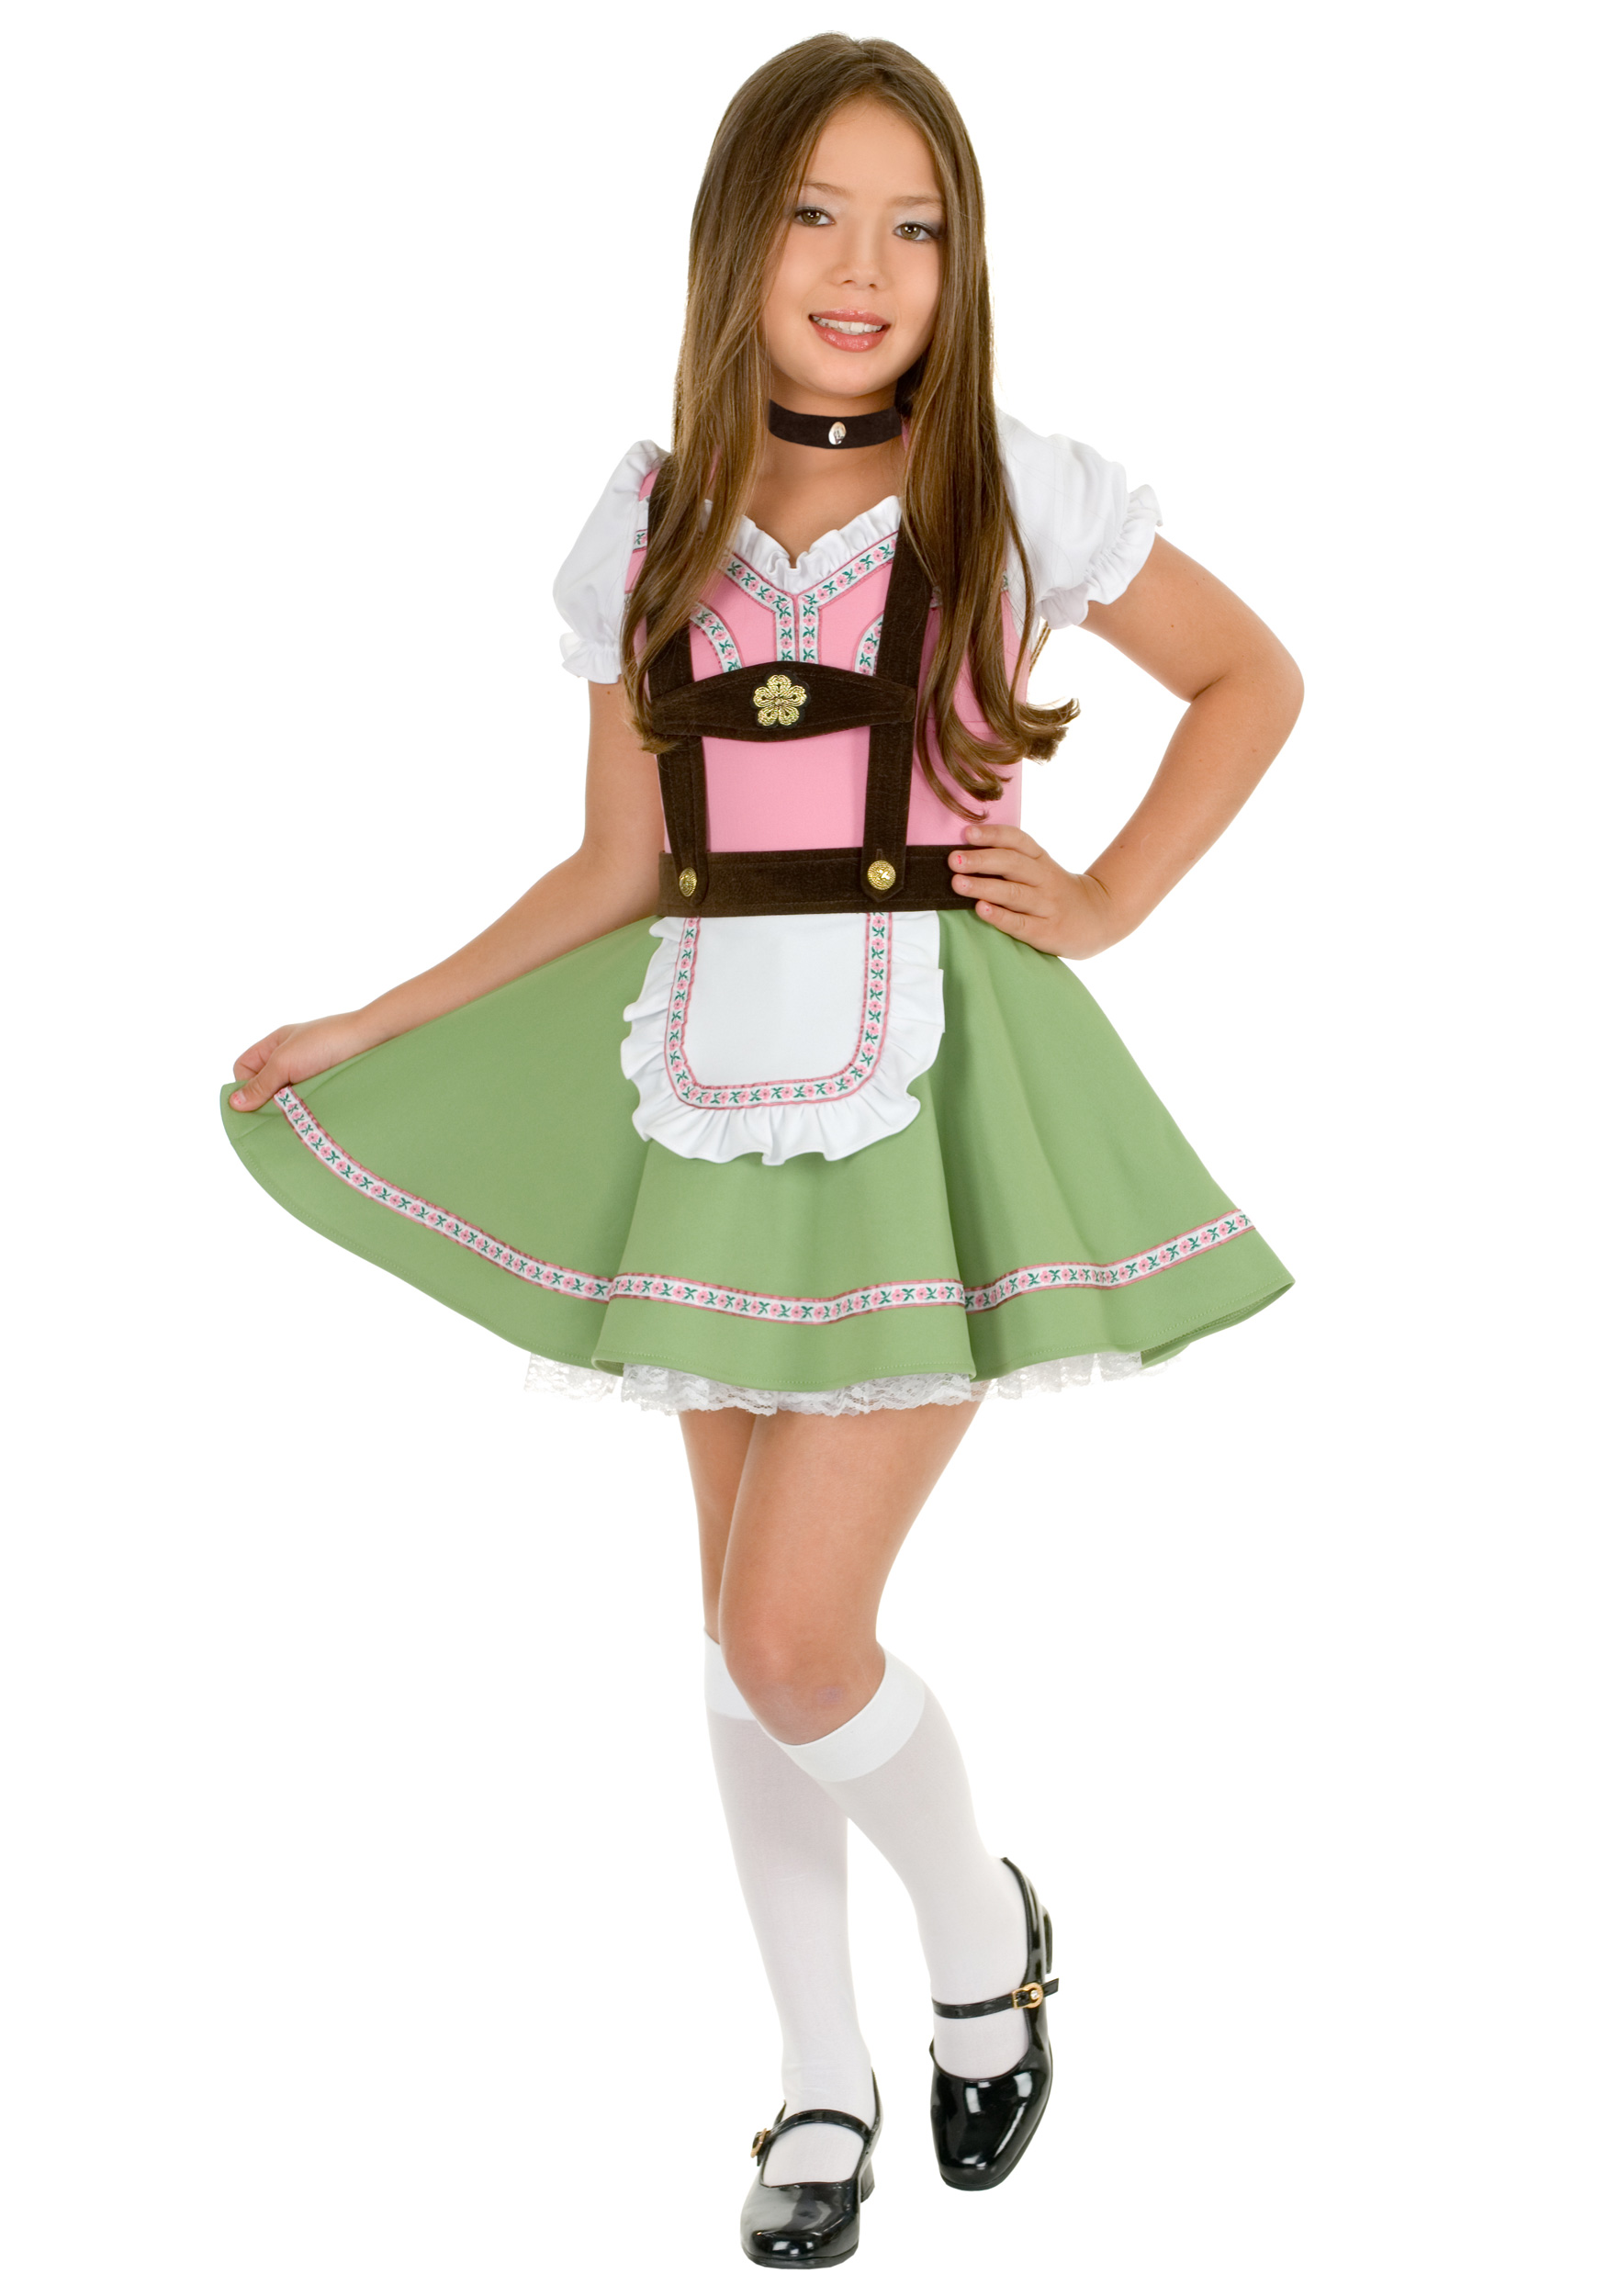 Hillbilly Girl Costume